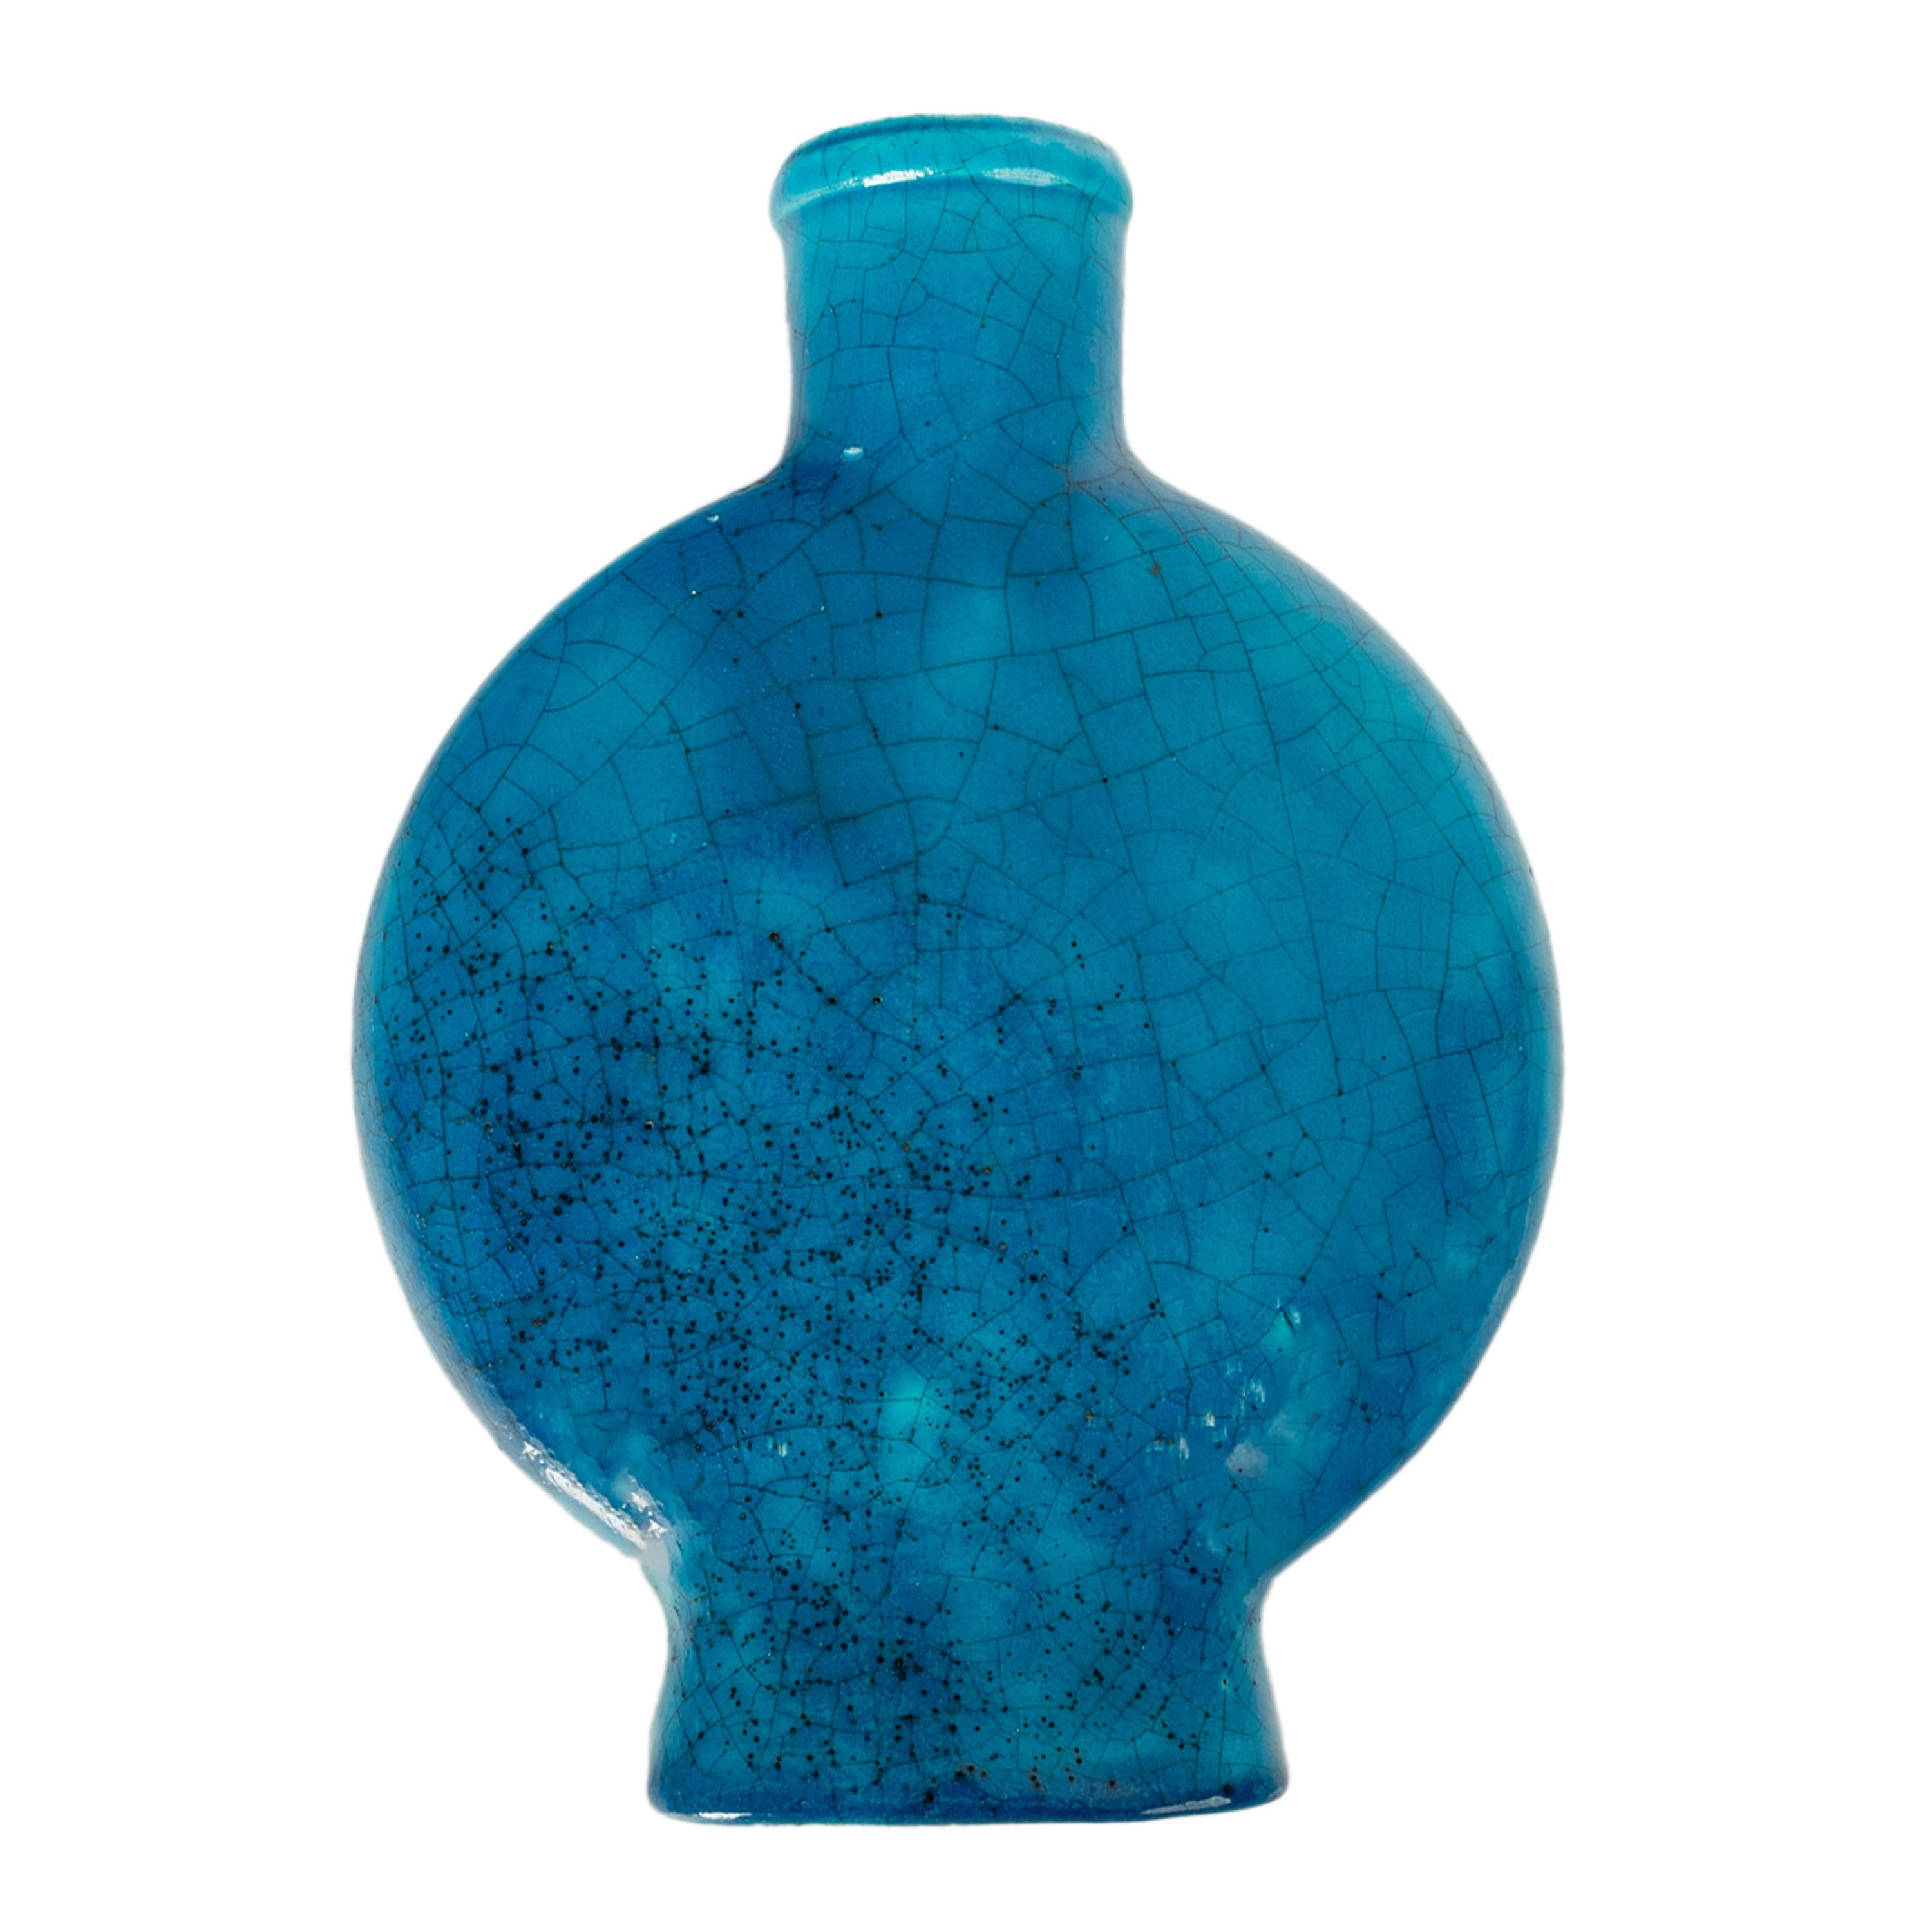 Edmond Lachenal (1855-1948), un magnifique vase Art Déco en céramique émaillée volcanique bleu turquoise, vers 1930, en très bon état. Edmond Lachenal était considéré comme un innovateur et une figure centrale du cercle d'art céramique de l'Art